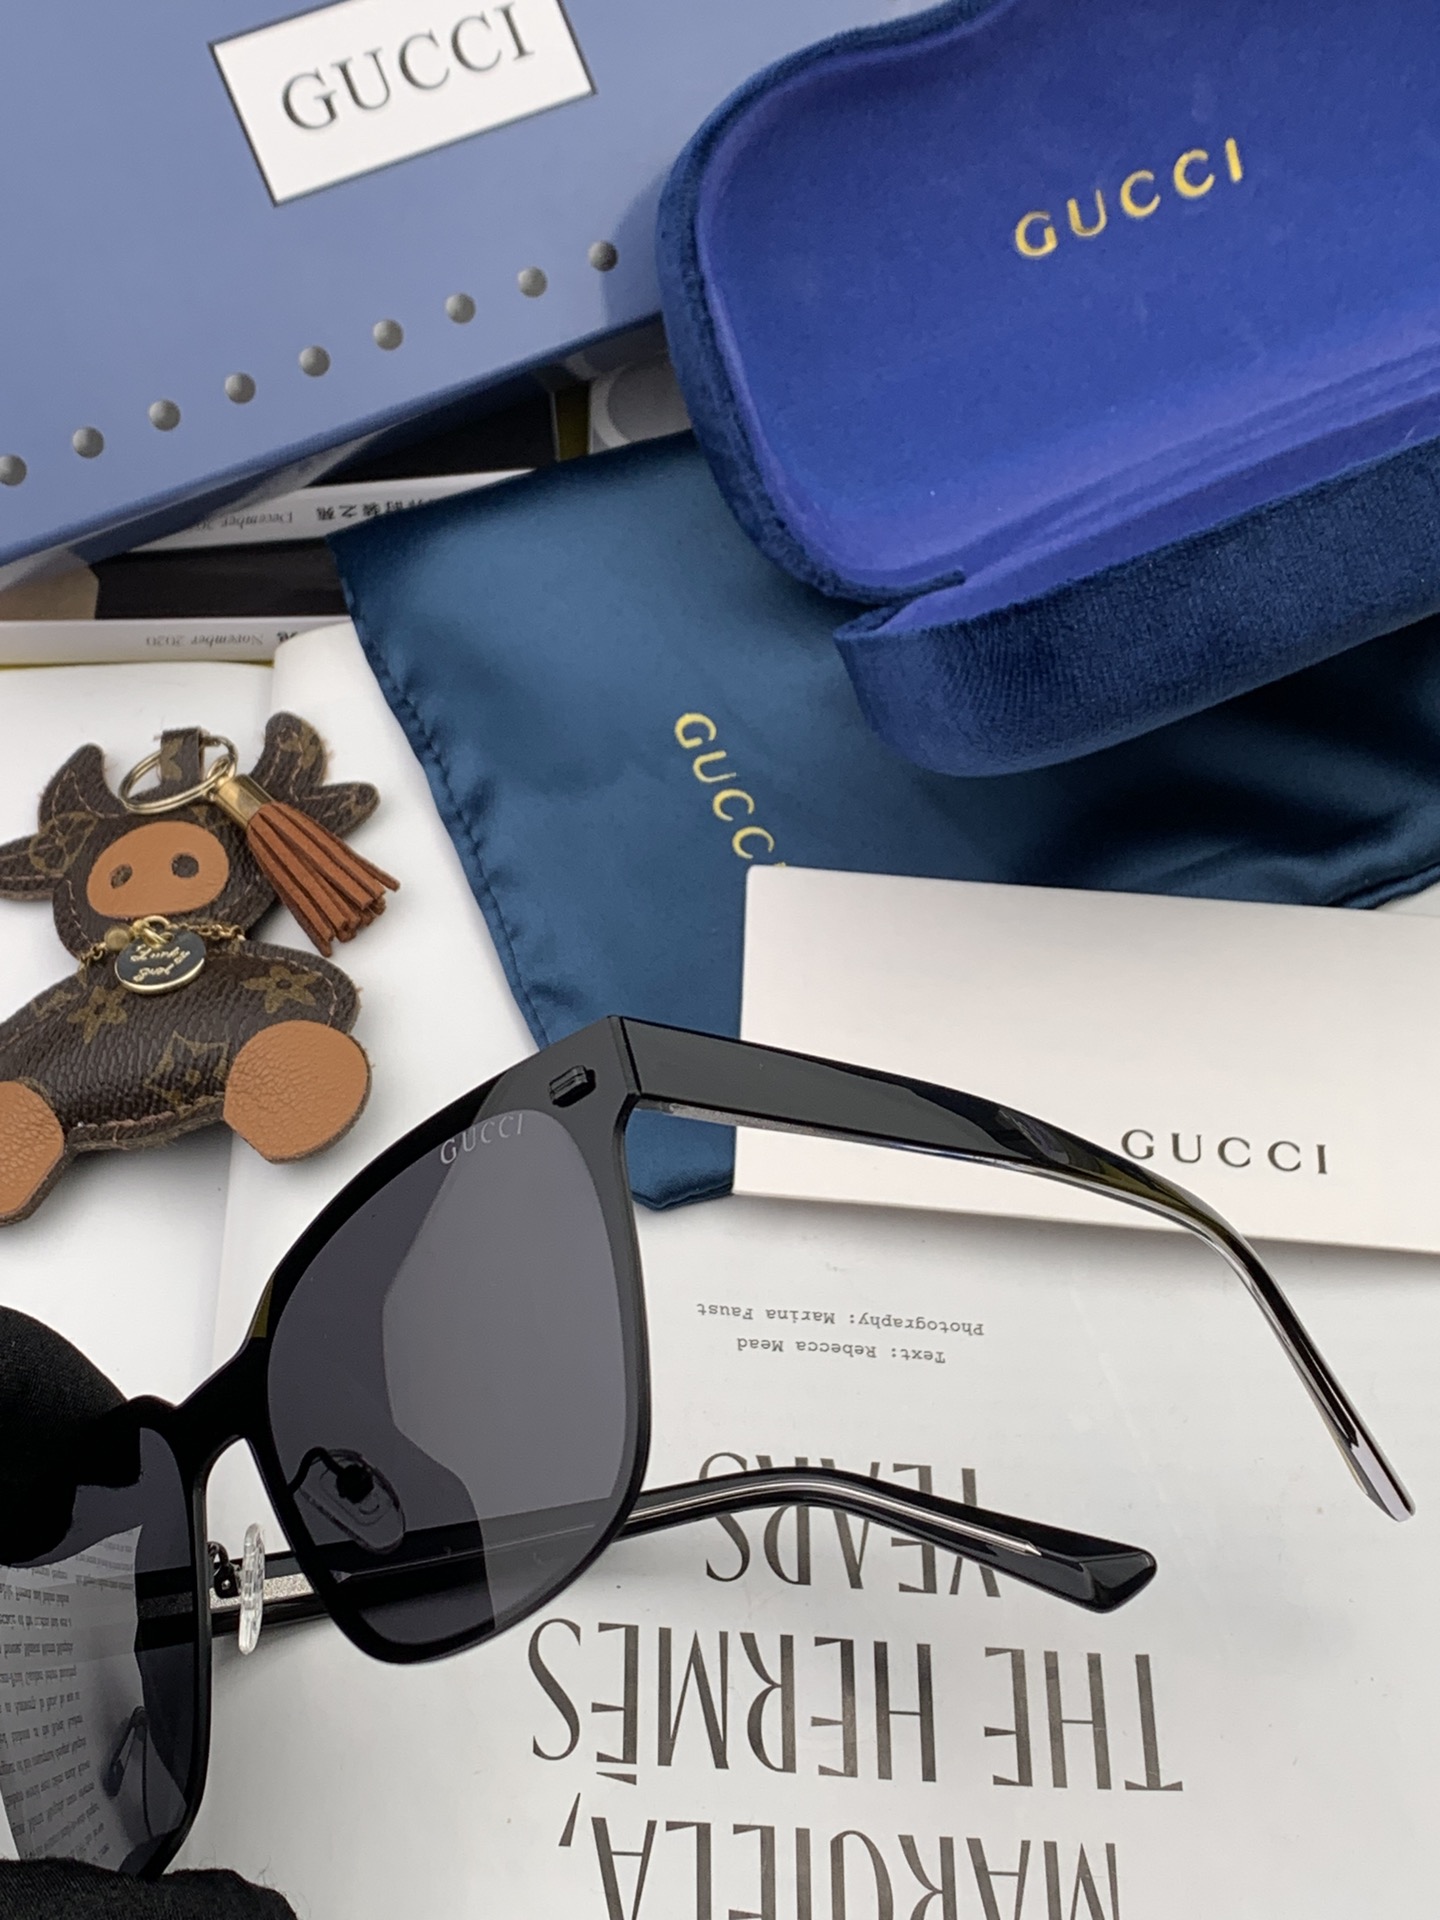 Gucci古奇新款连体驶驾镜墨镜出行必众备多明星同款太阳镜男女太士阳镜飞行型号G4205